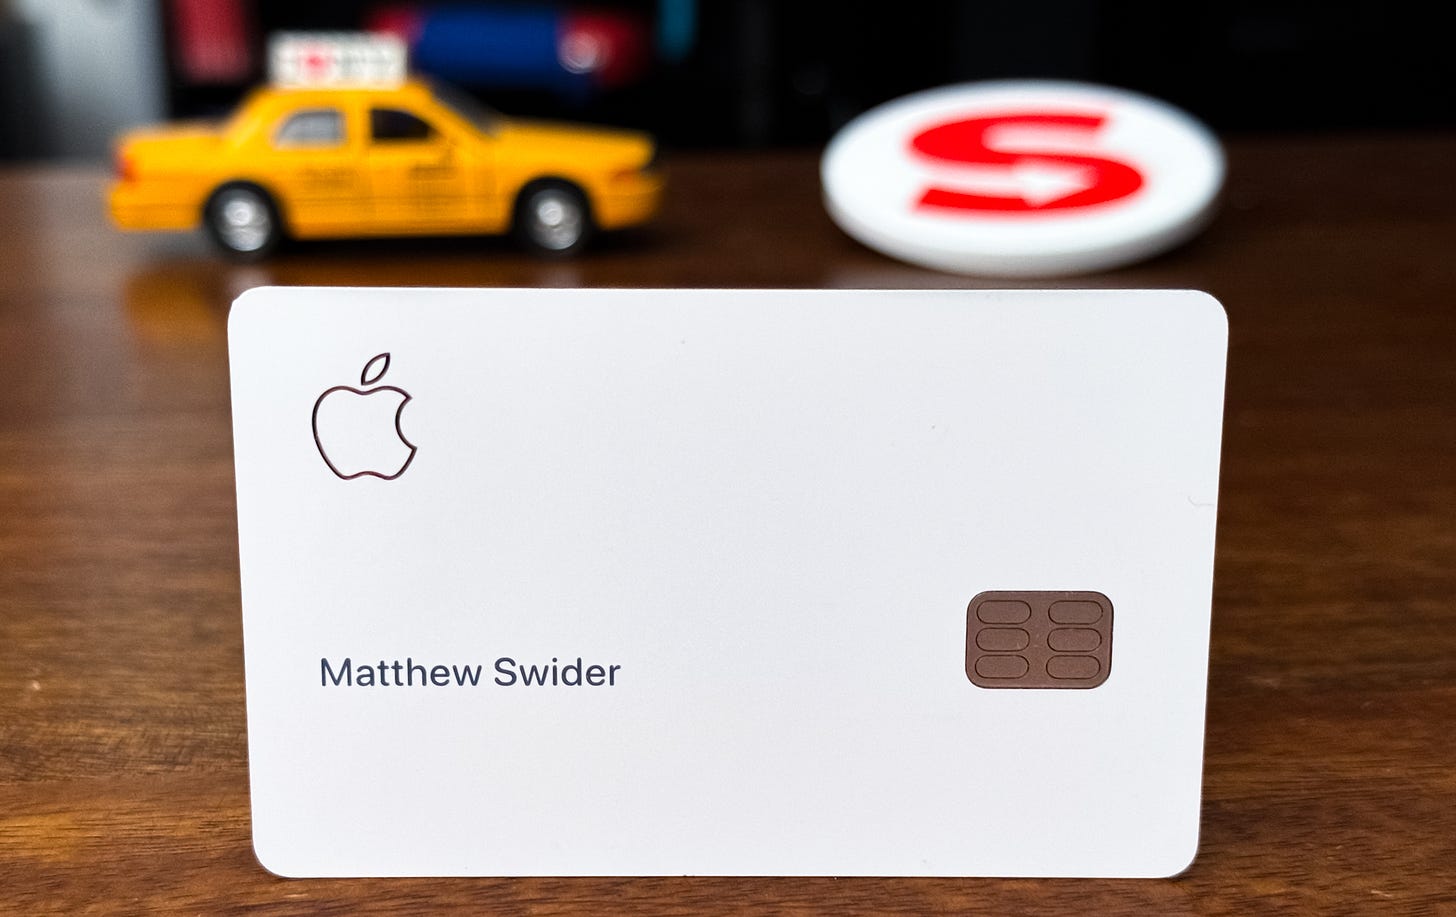 Apple Pay Card